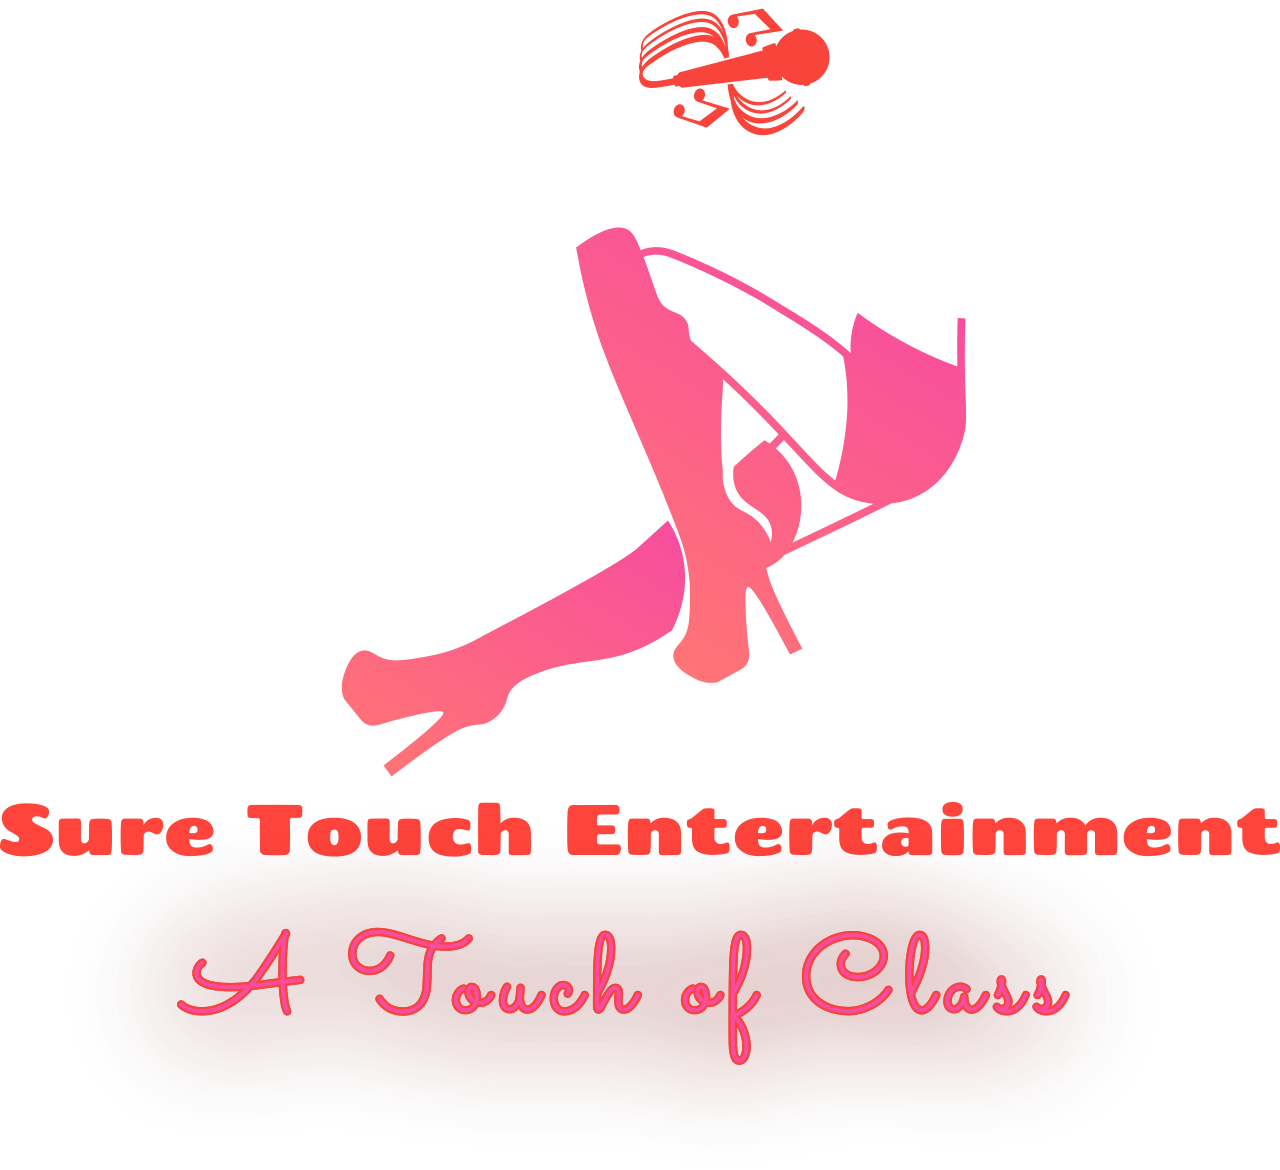 Sure Touch Entertainment 's logo